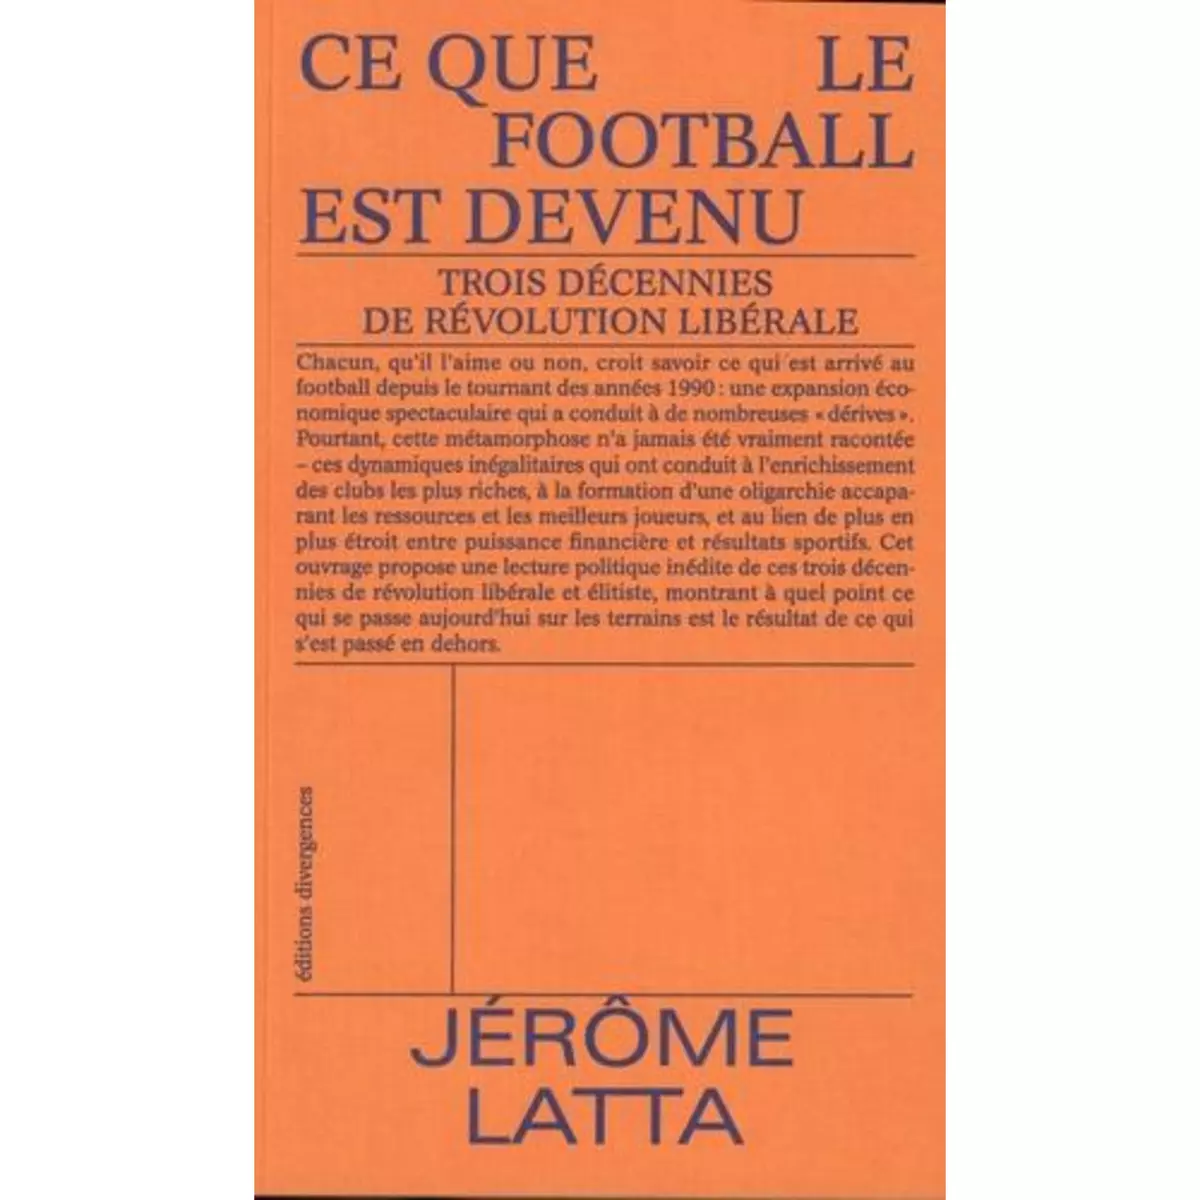  CE QUE LE FOOTBALL EST DEVENU. TROIS DECENNIES DE REVOLUTION LIBERALE, Latta Jérôme